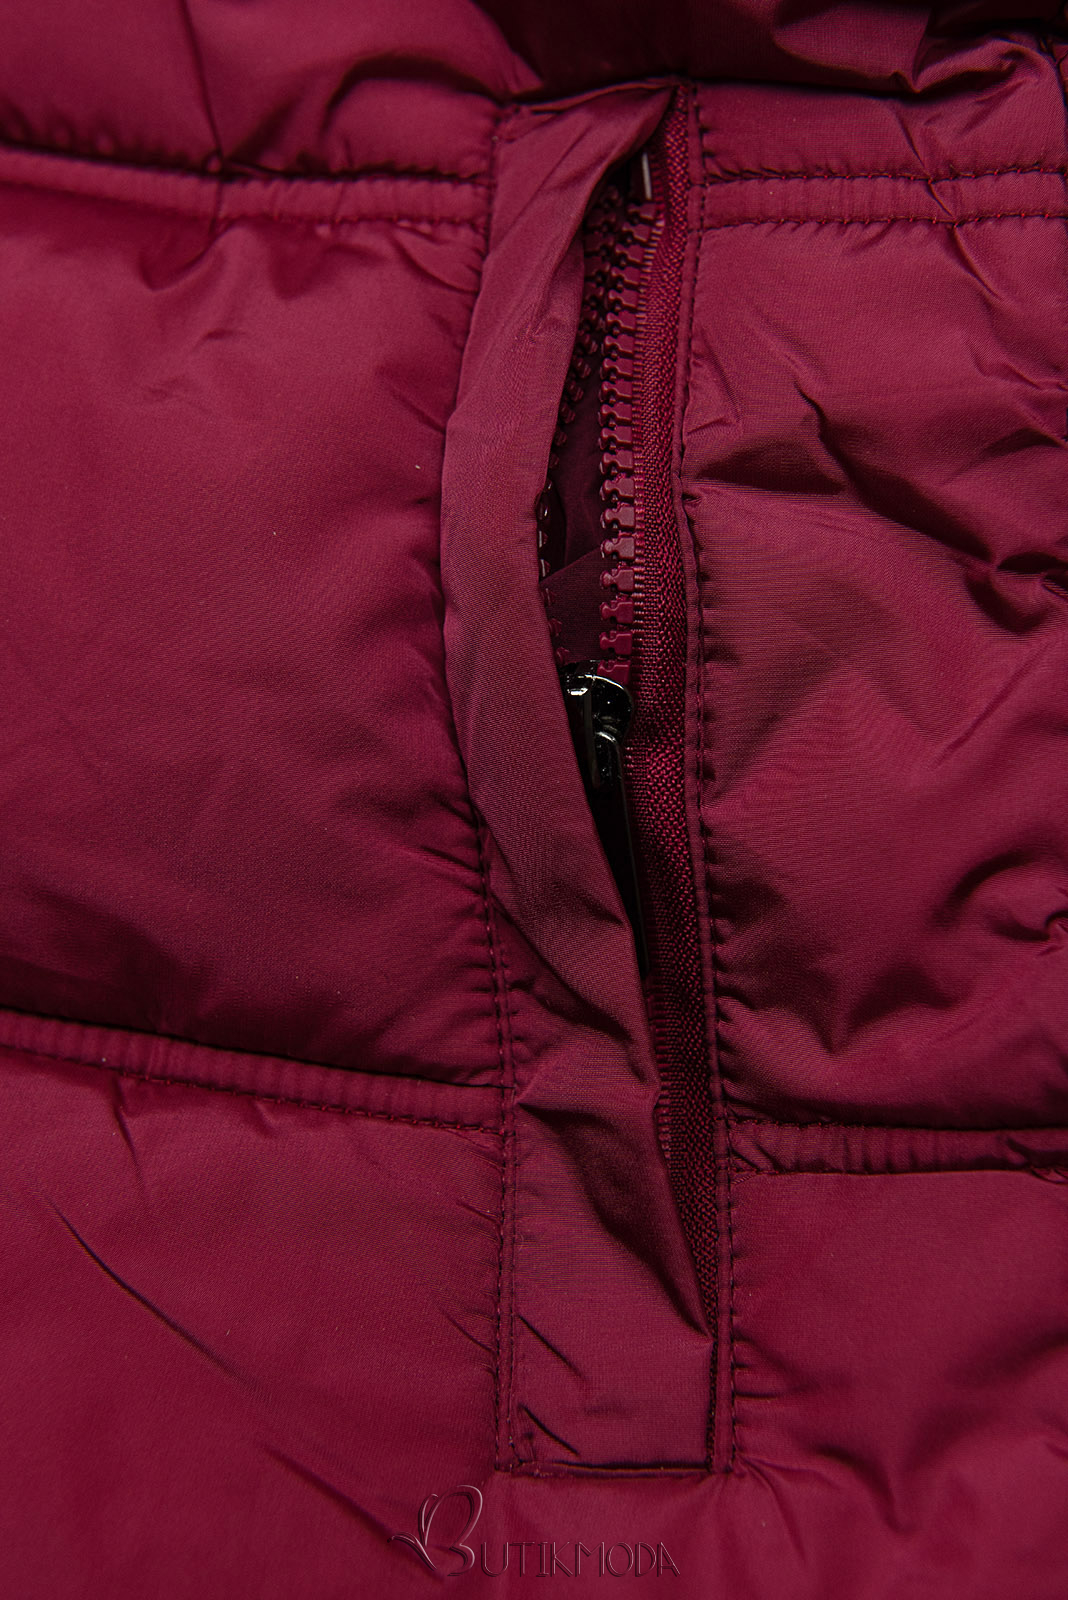 Burgundi vörös színű téli kabát steppelt kivitelben